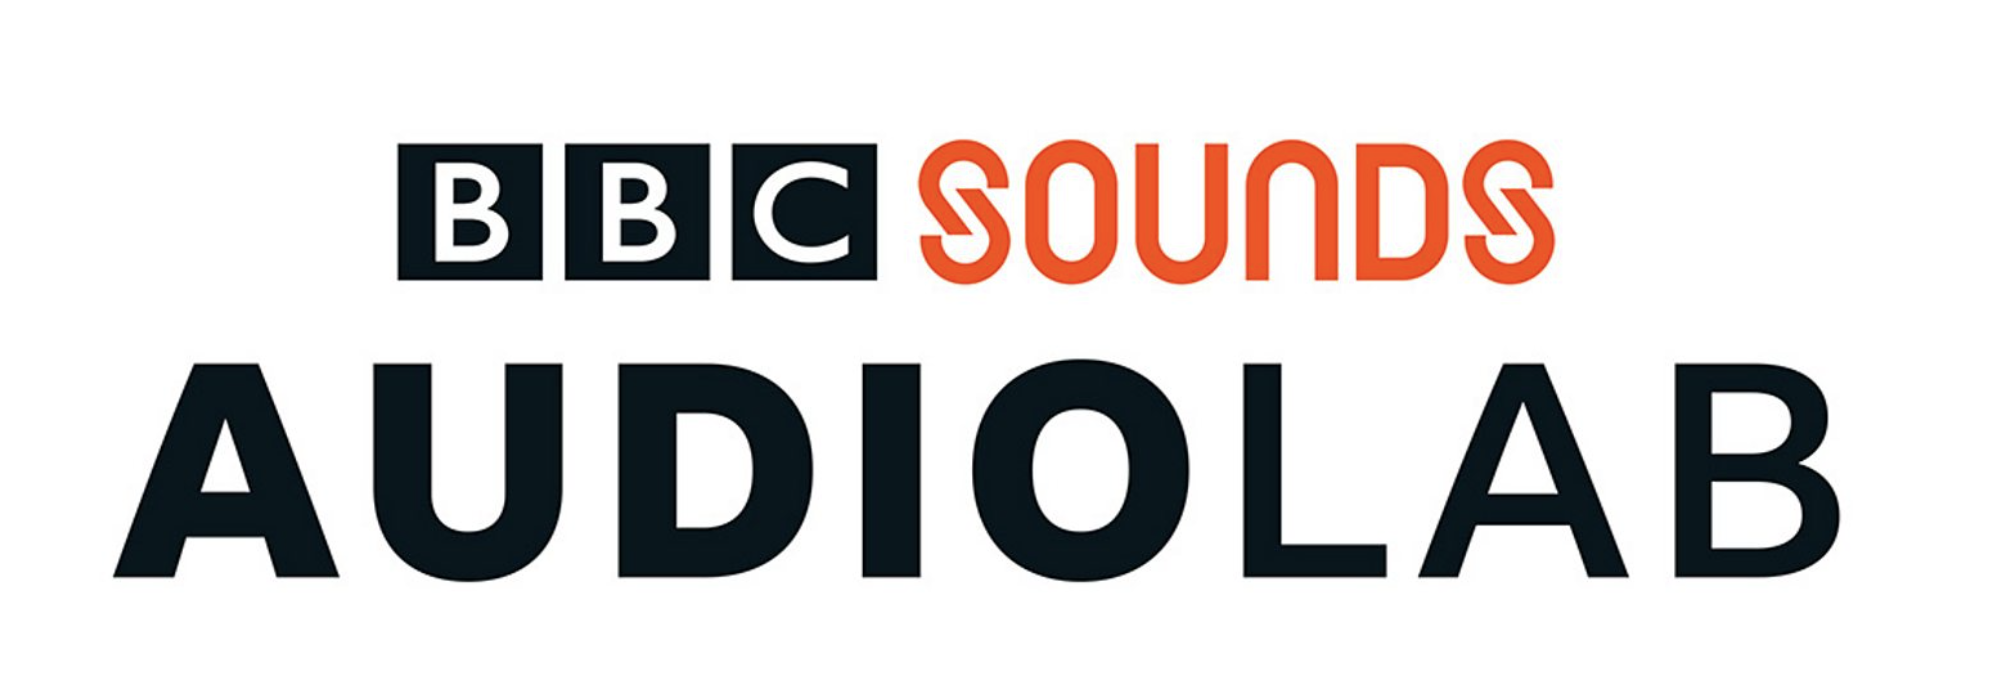 BBC Sounds lance Audio Lab pour les podcasteurs